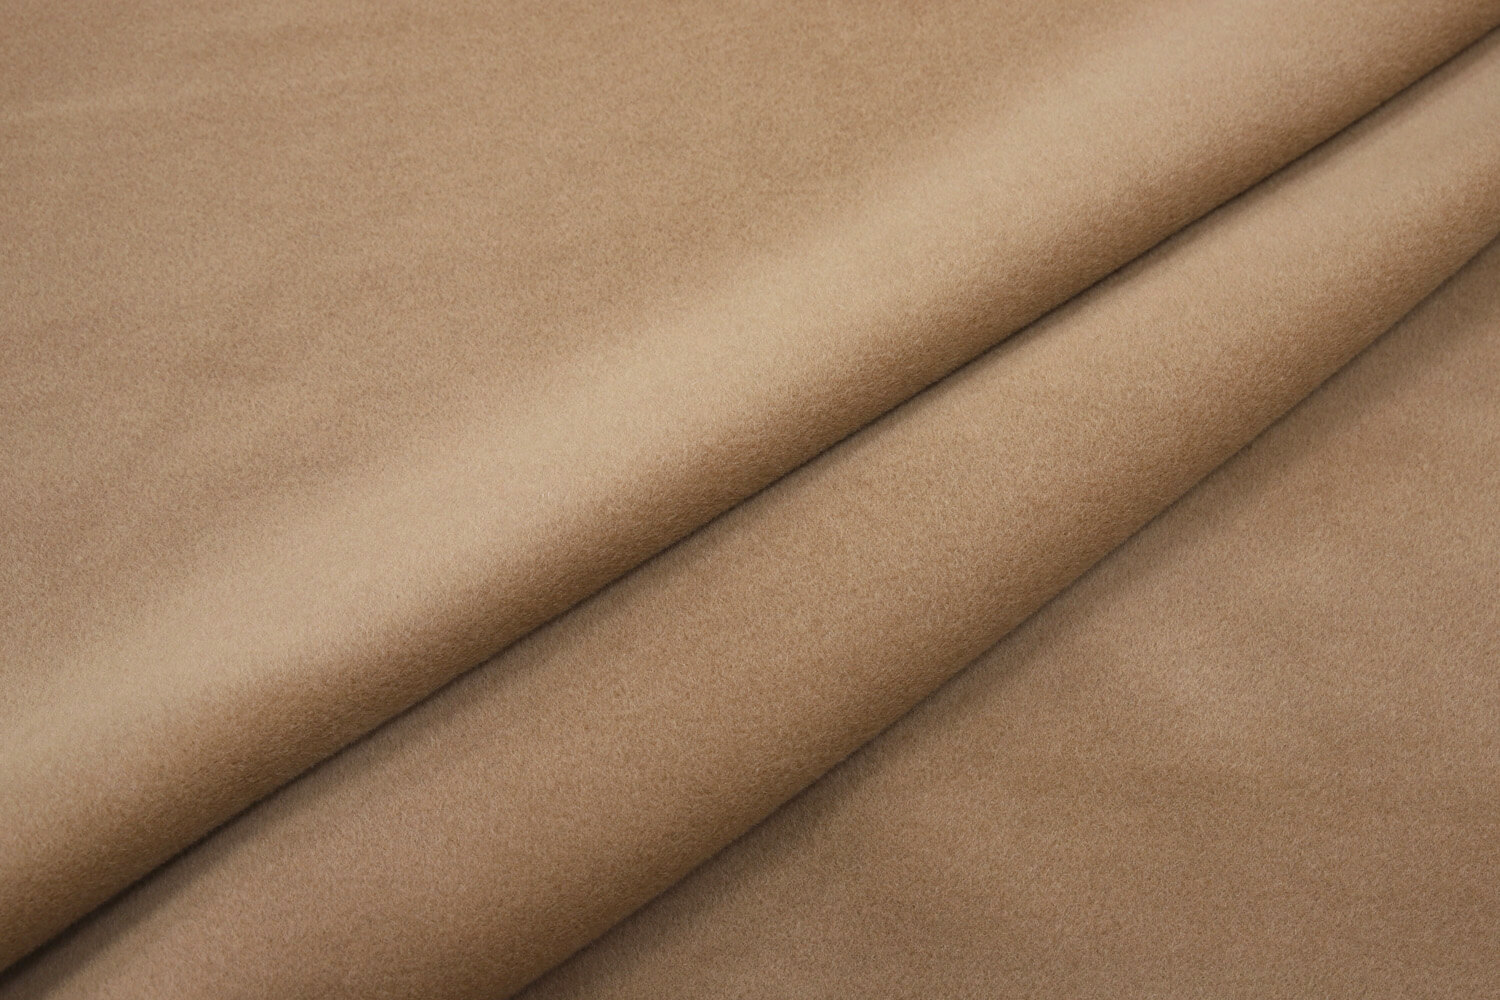 Пальтовая ткань beaver wool на пальто 101801 Max Mara ОТРЕЗЫ, цвет Бежевый, фото 2